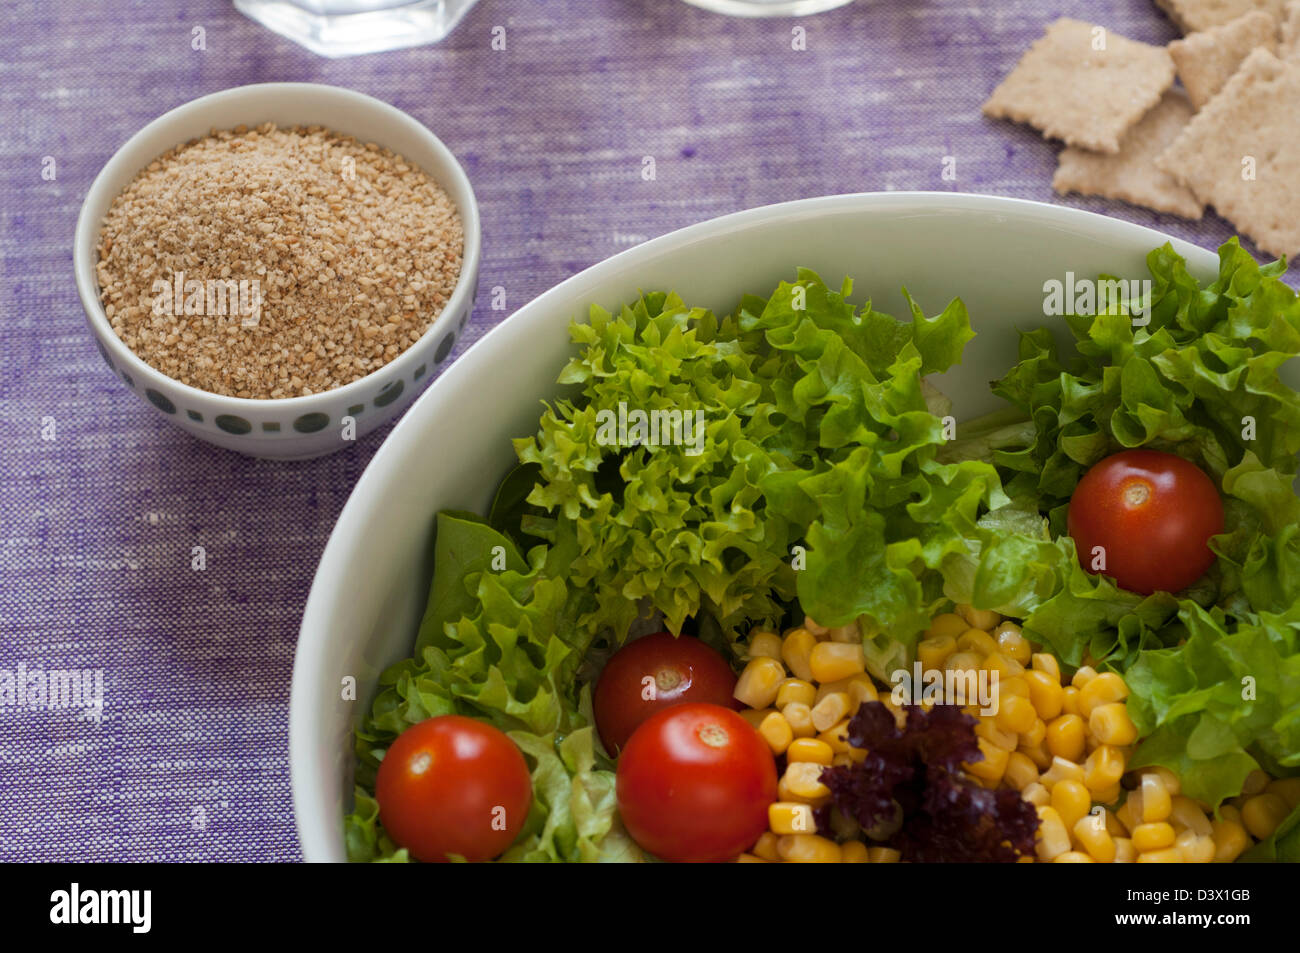 Vue rapprochée de matière organique fraîche salade : laitue, tomate, maïs doux. Condiments Gomasio sur la gauche Banque D'Images